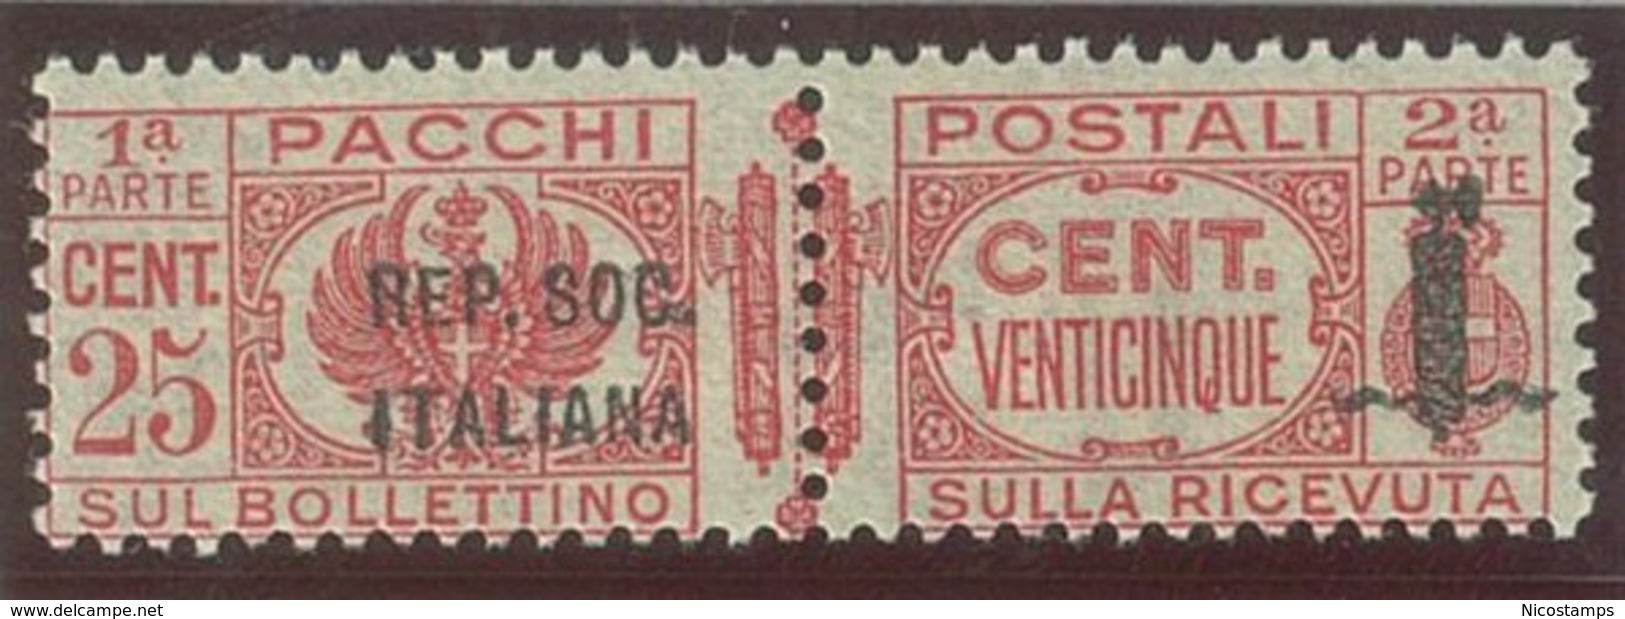 ITALIA REPUBBLICA SOCIALE ITALIANA (R.S.I.) SASS. P.P. 38a  NUOVO - Paketmarken